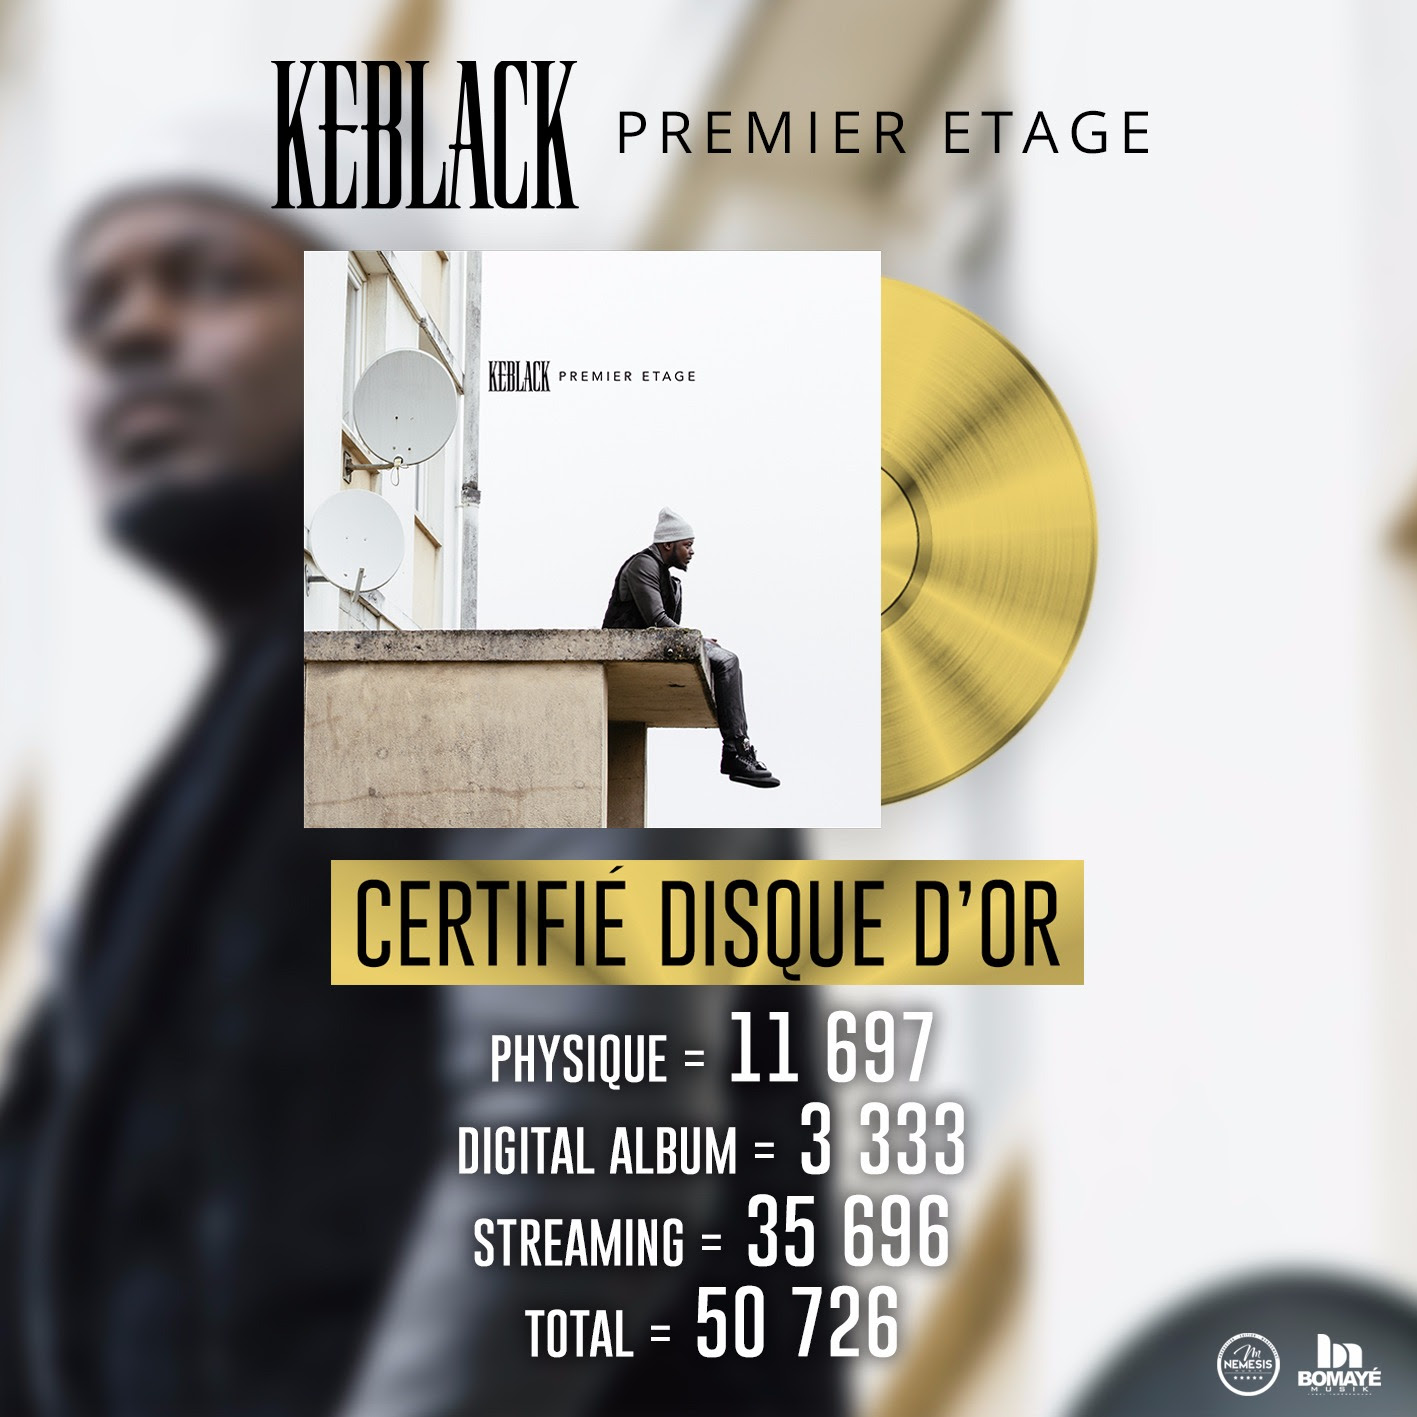 Keblack album